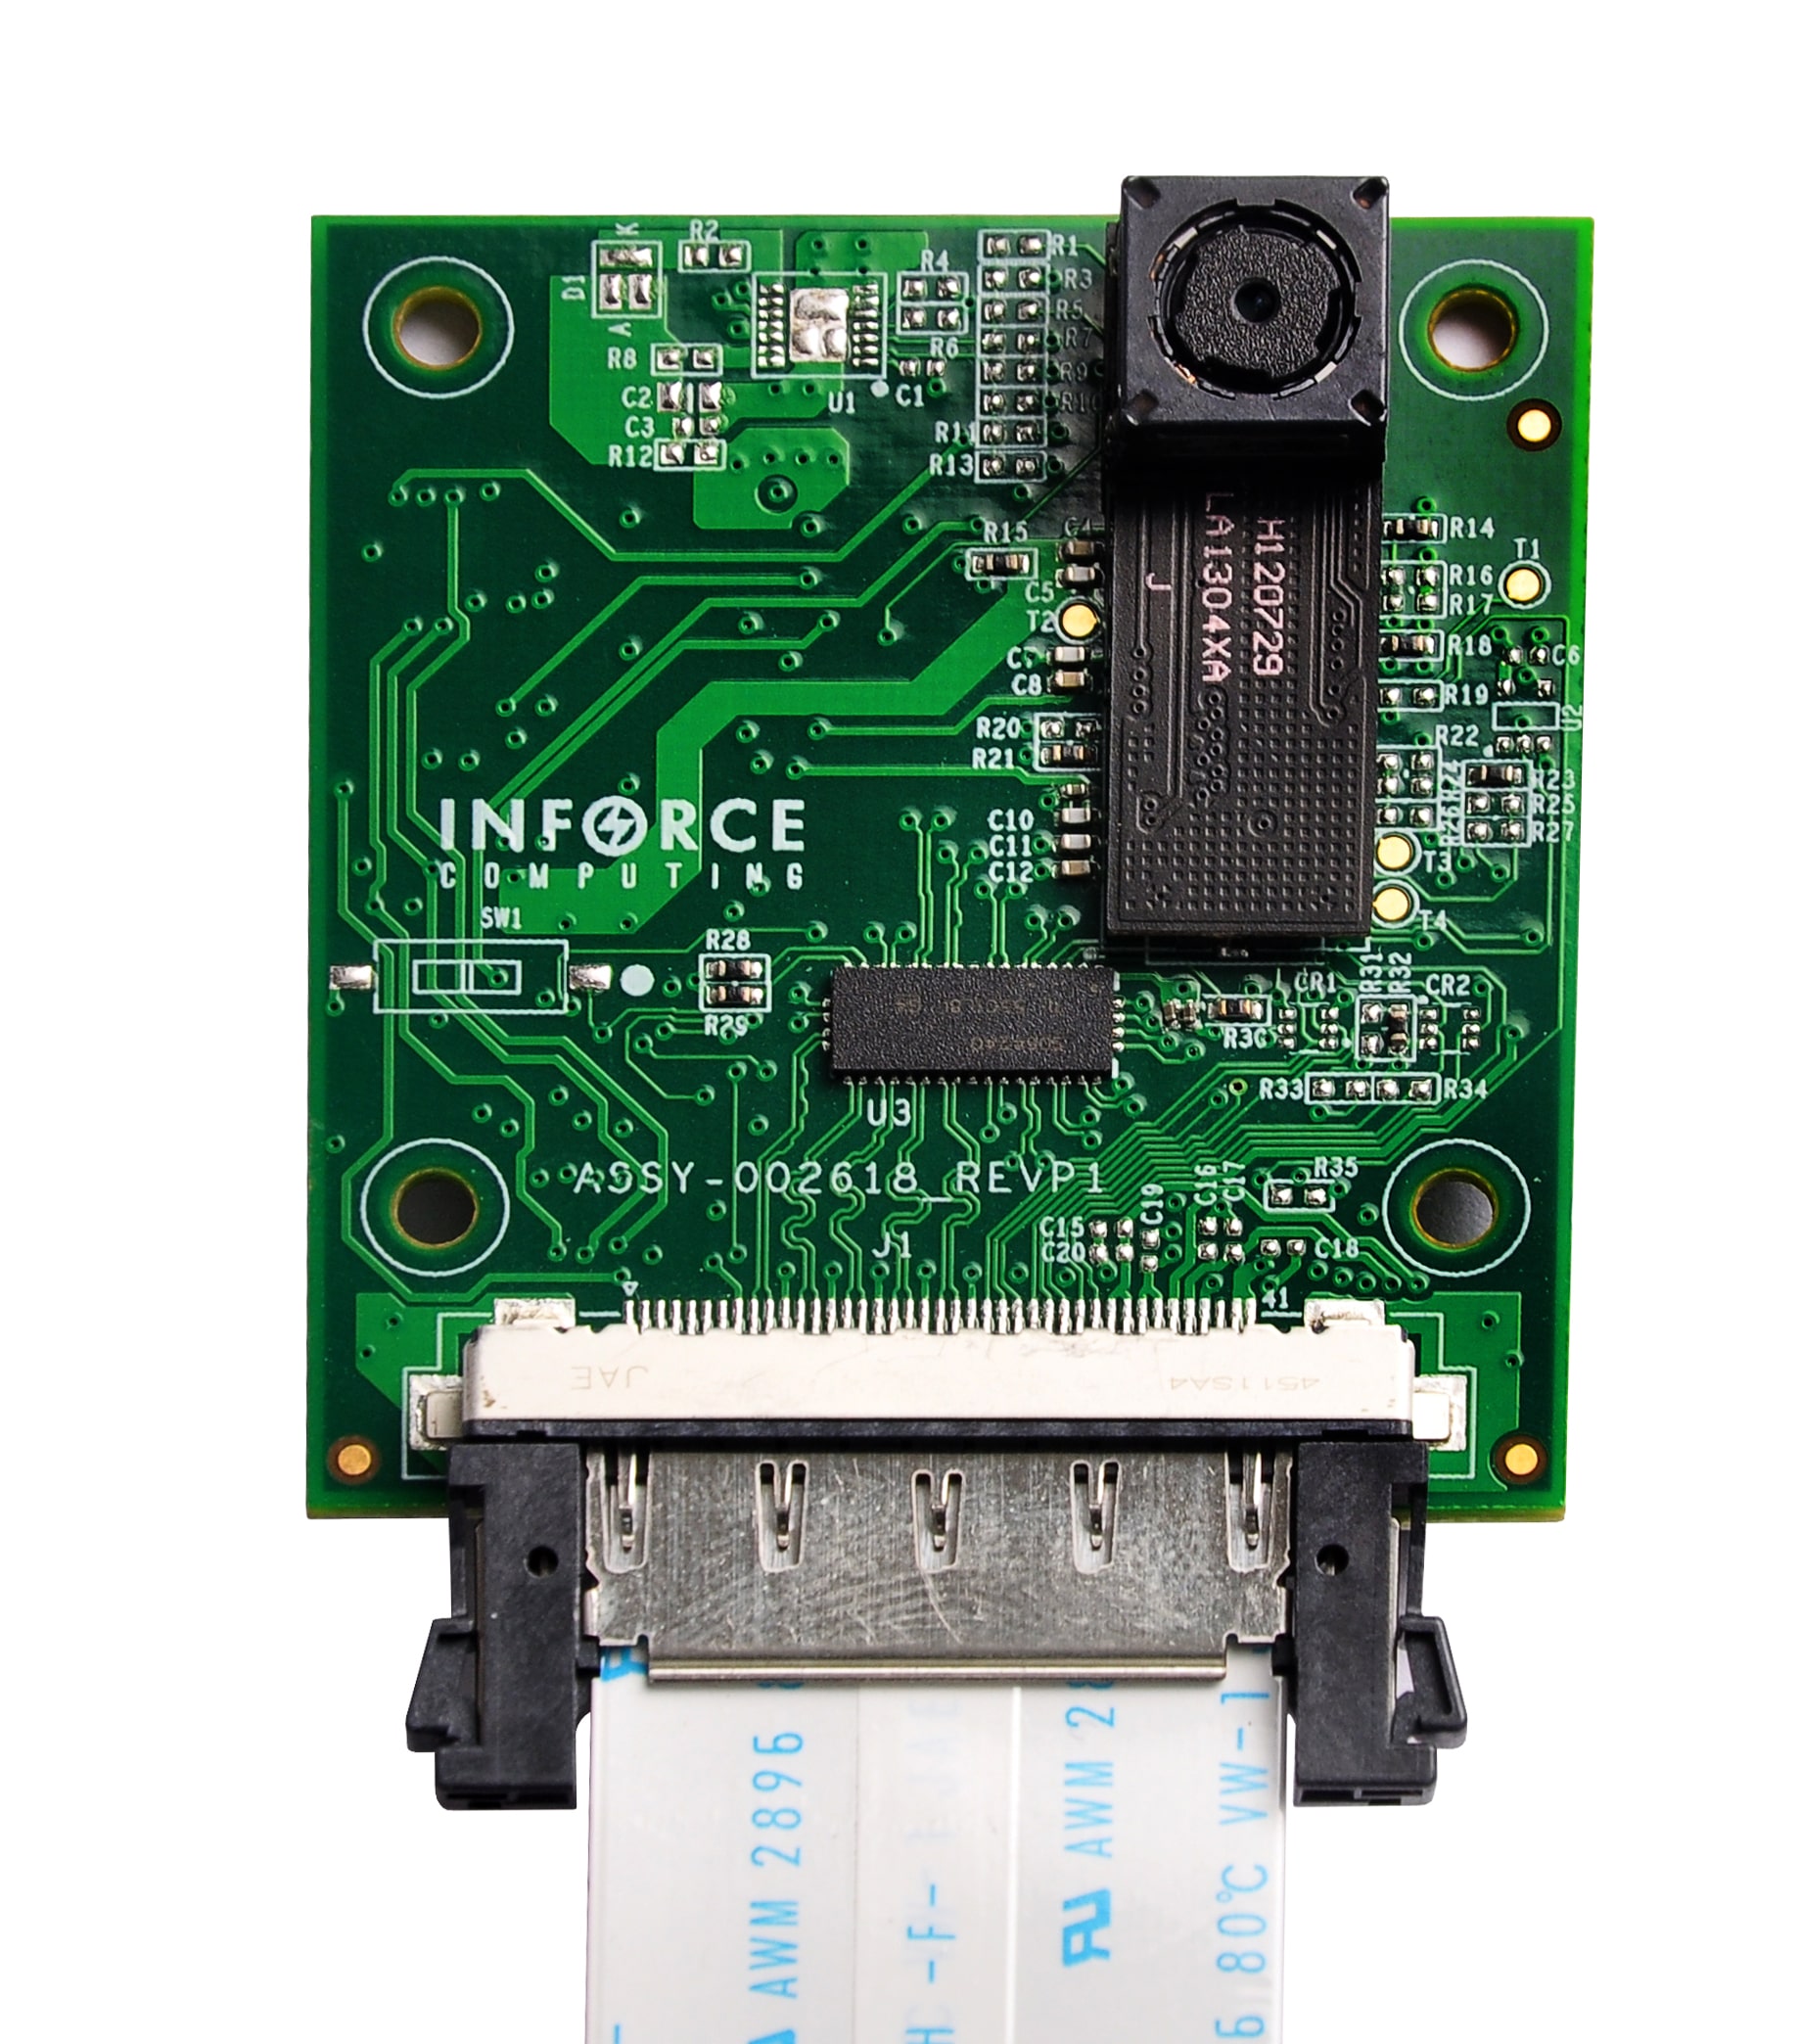 MIPI-CSI 5MP camera with both 41-pin and 51-pin connectors